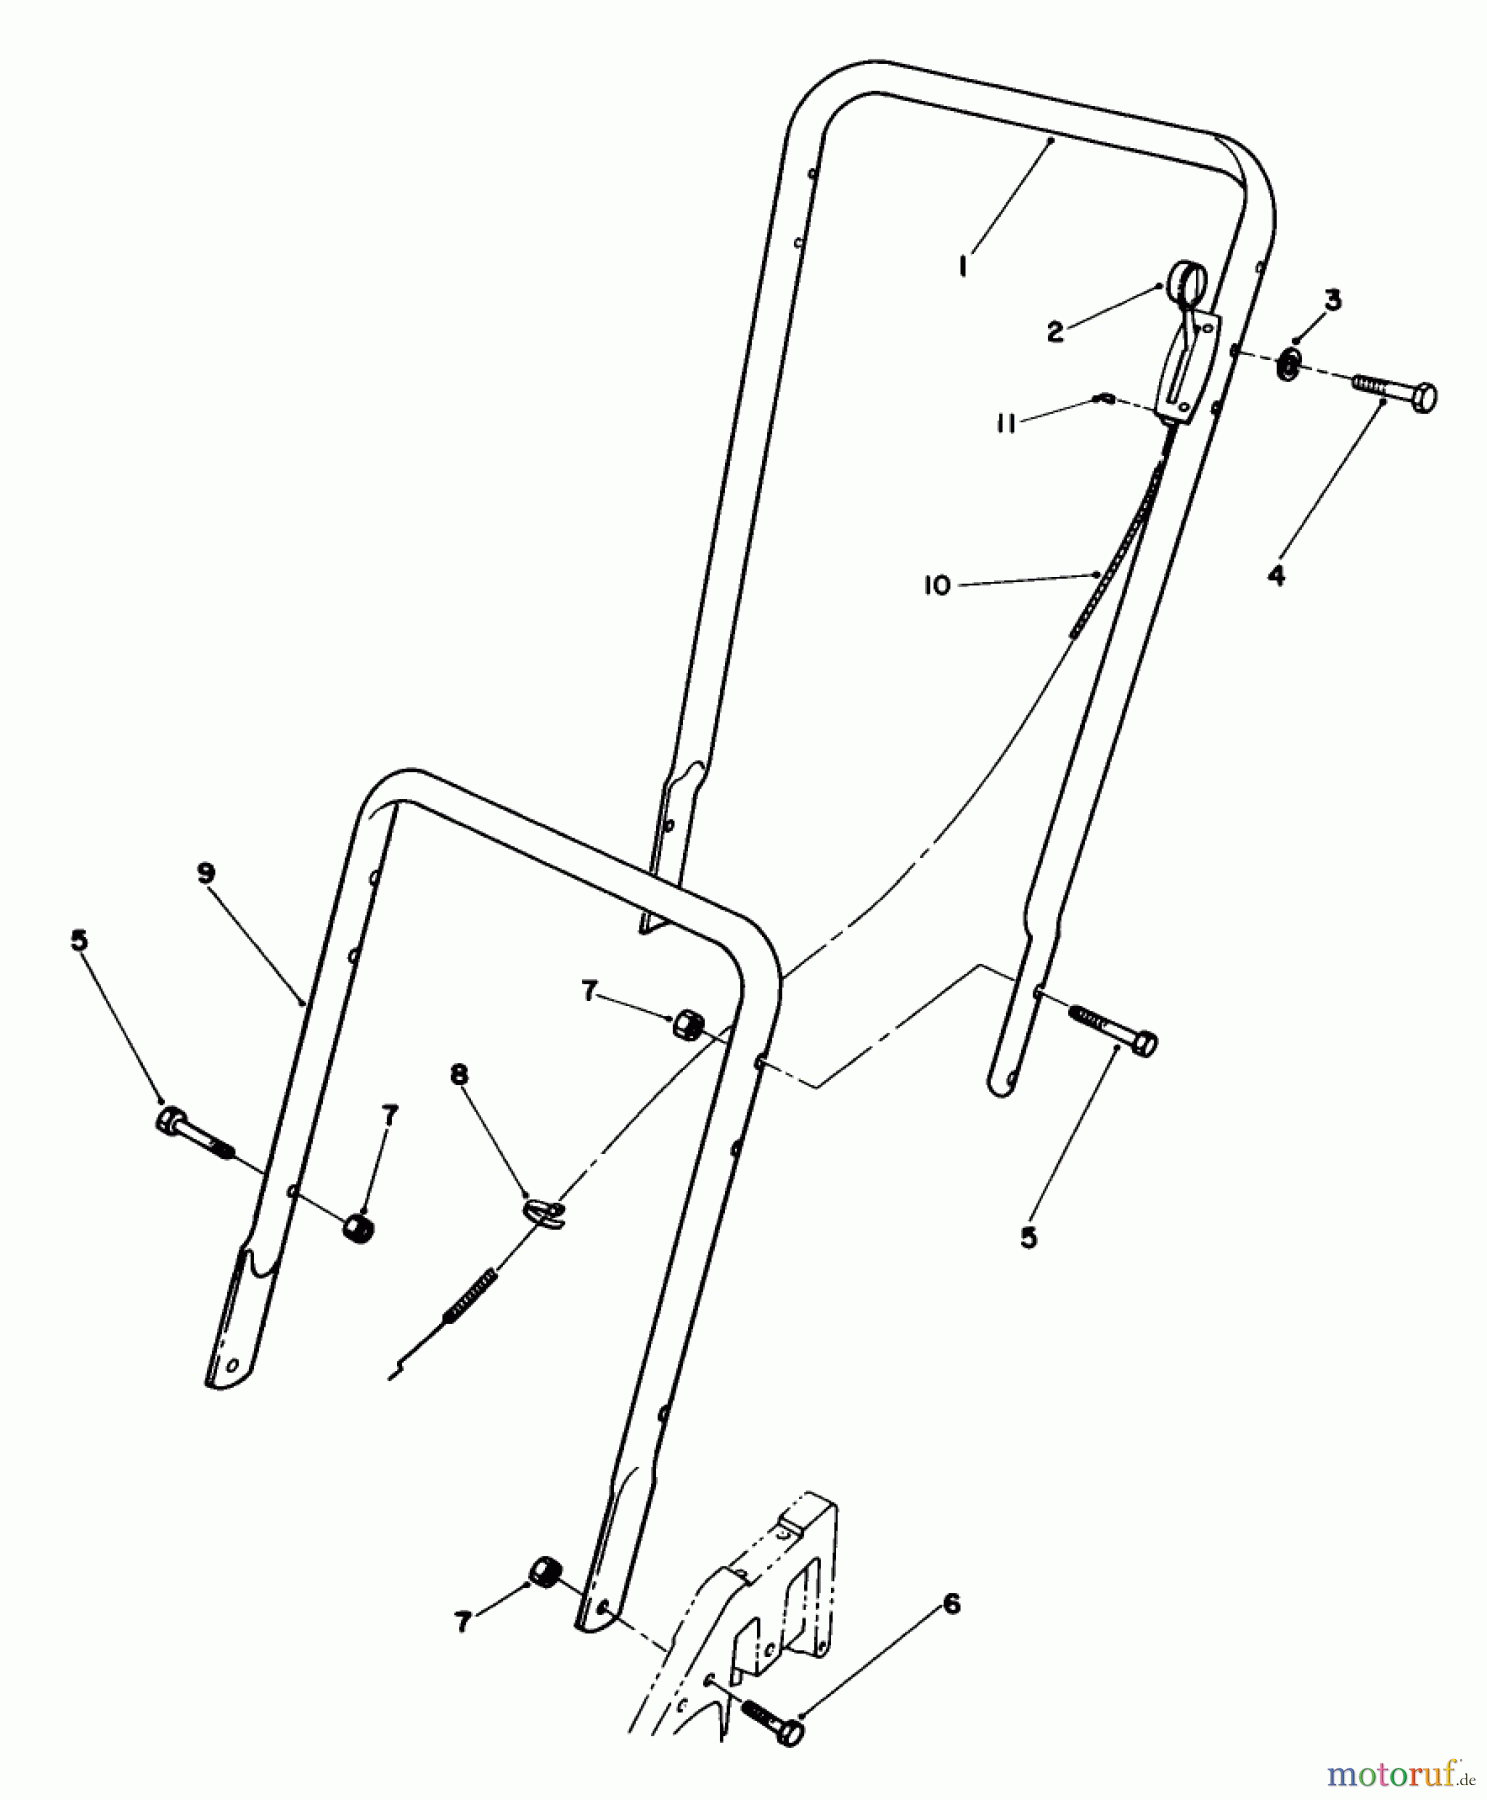  Toro Neu Mowers, Walk-Behind Seite 2 22025 - Toro Lawnmower, 1991 (1000001-1999999) HANDLE ASSEMBLY